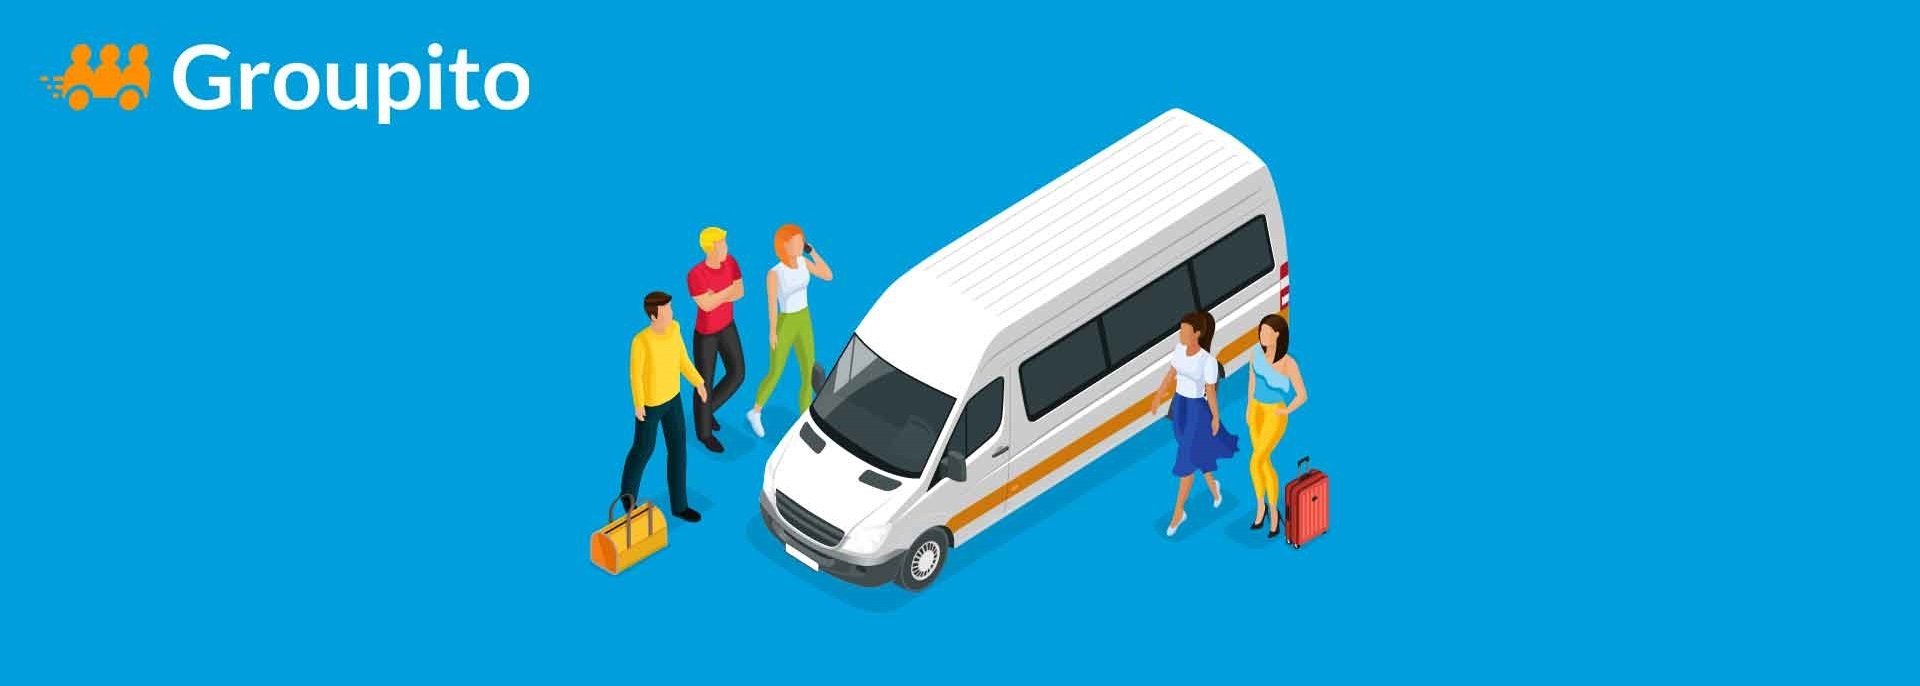 8 astuces pour bien louer un autocar, bus ou minibus avec chauffeur